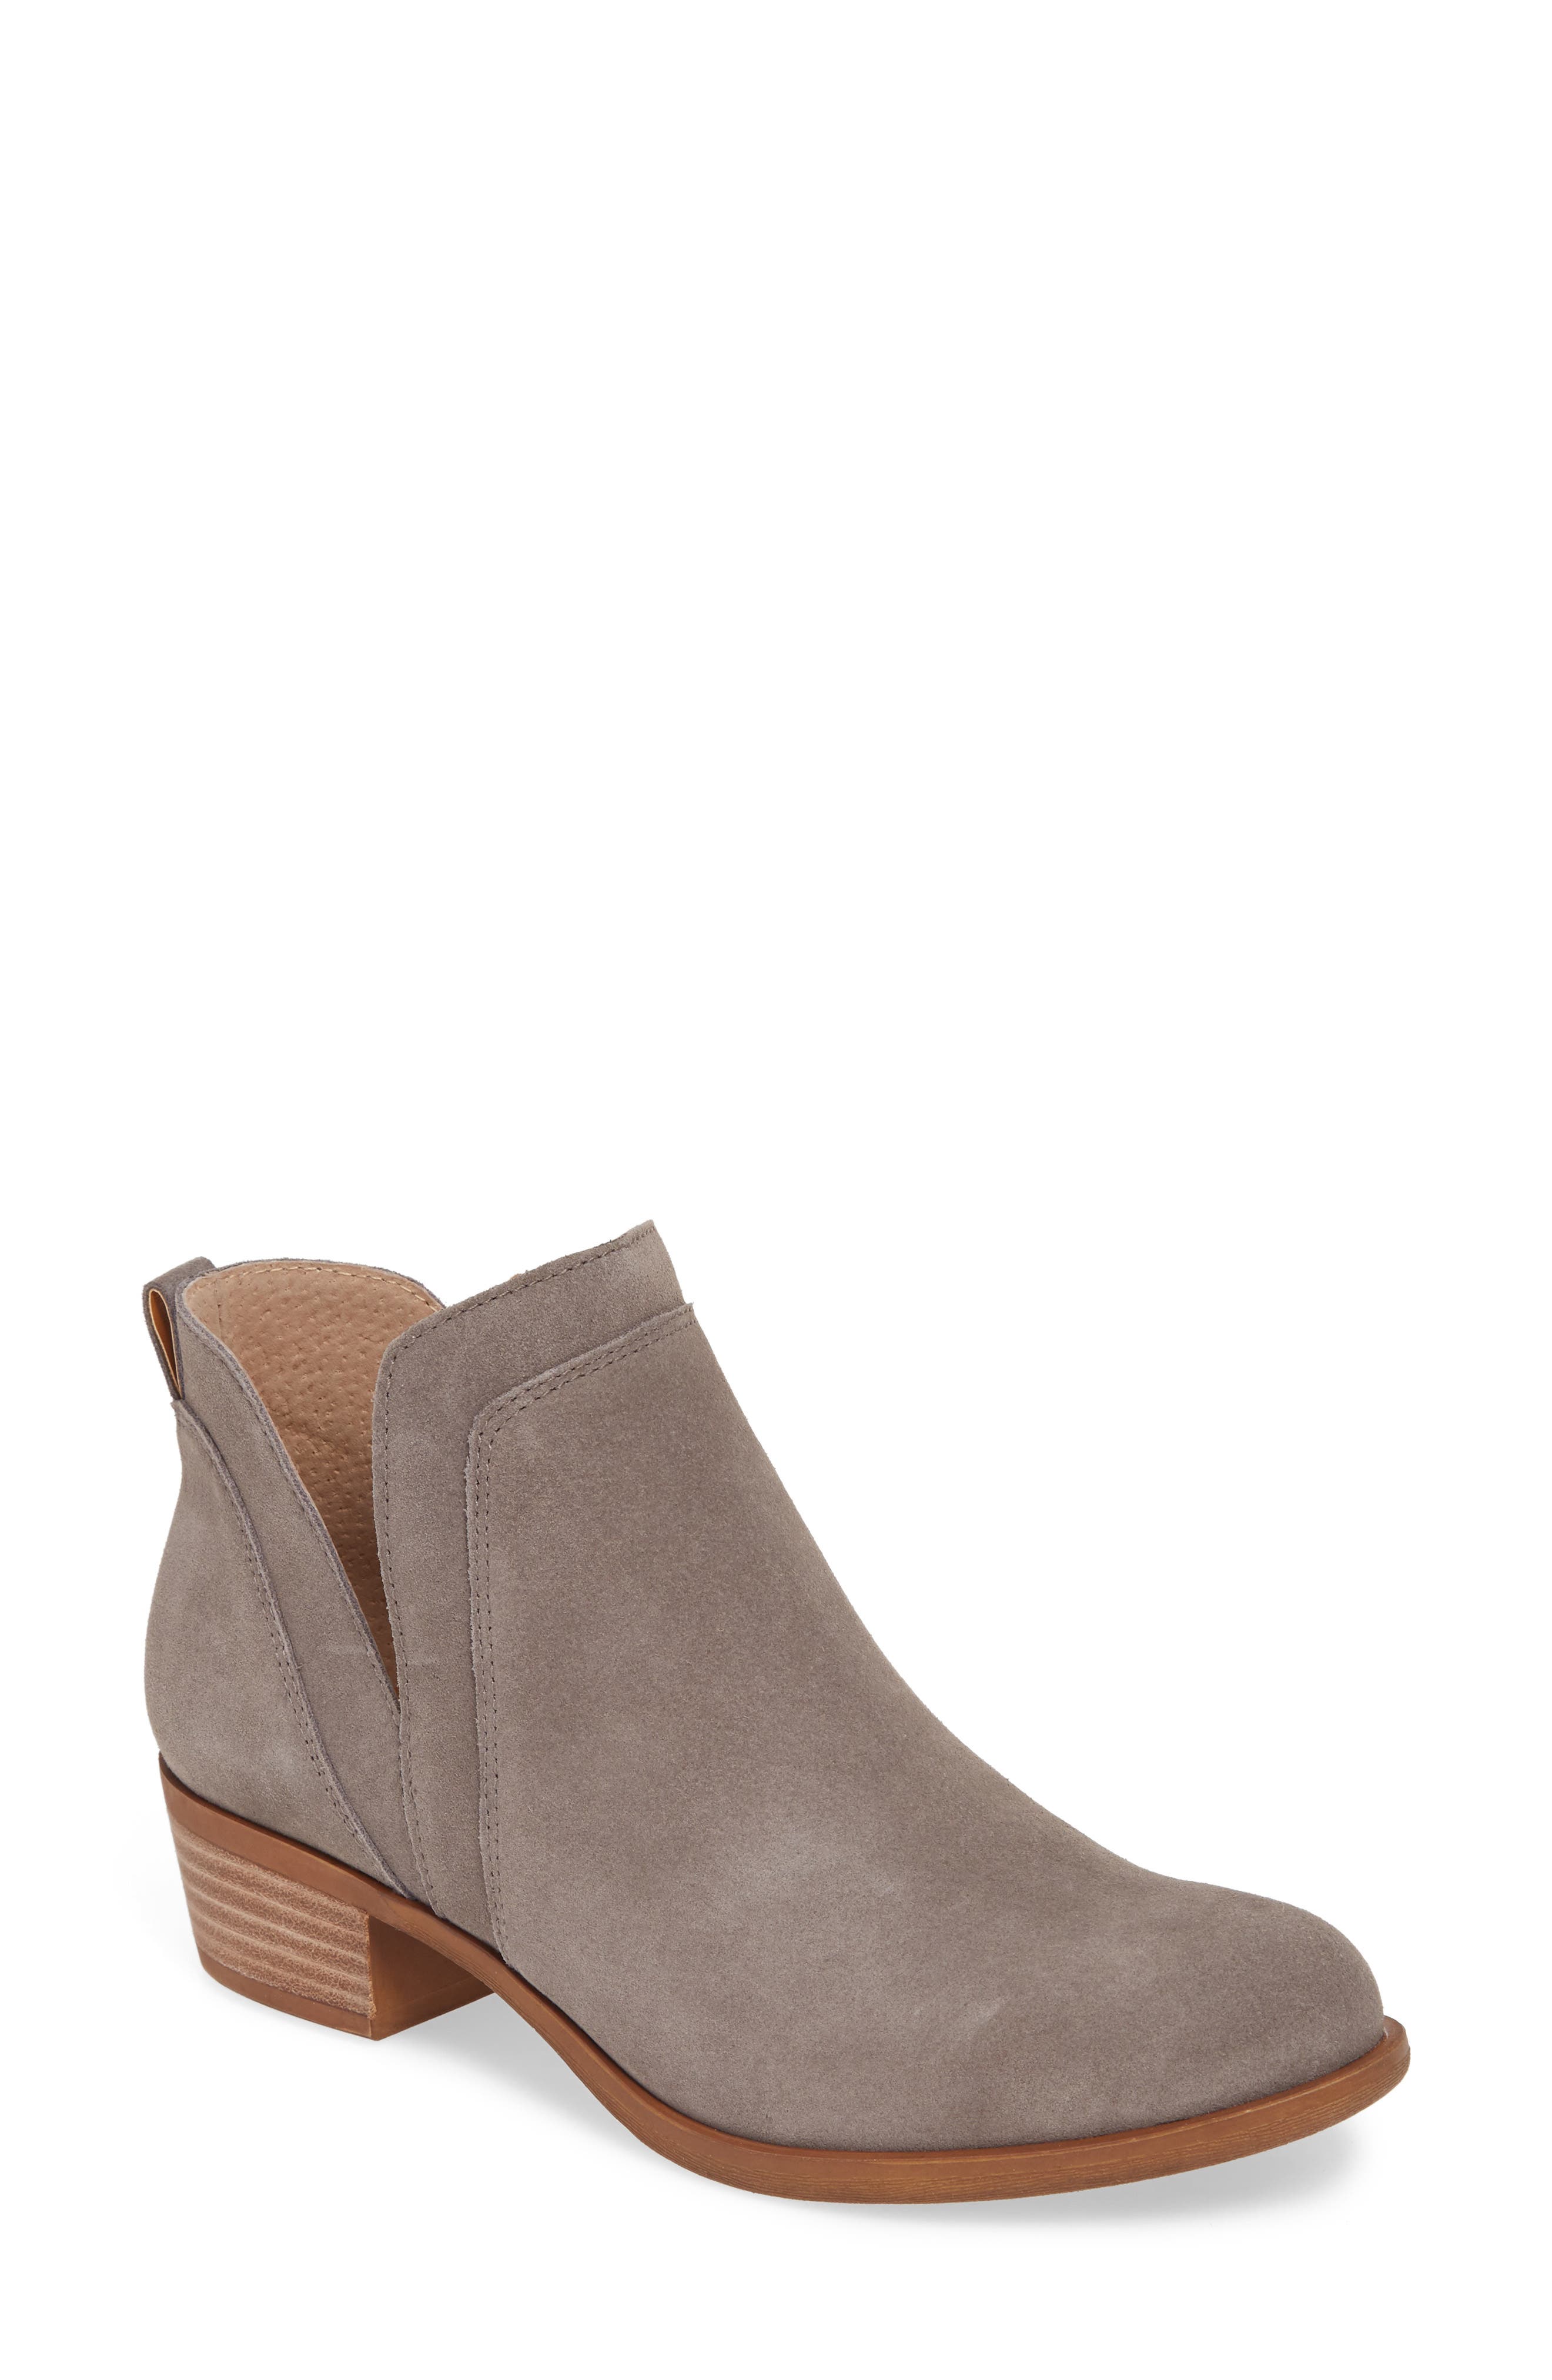 grey bootie heels